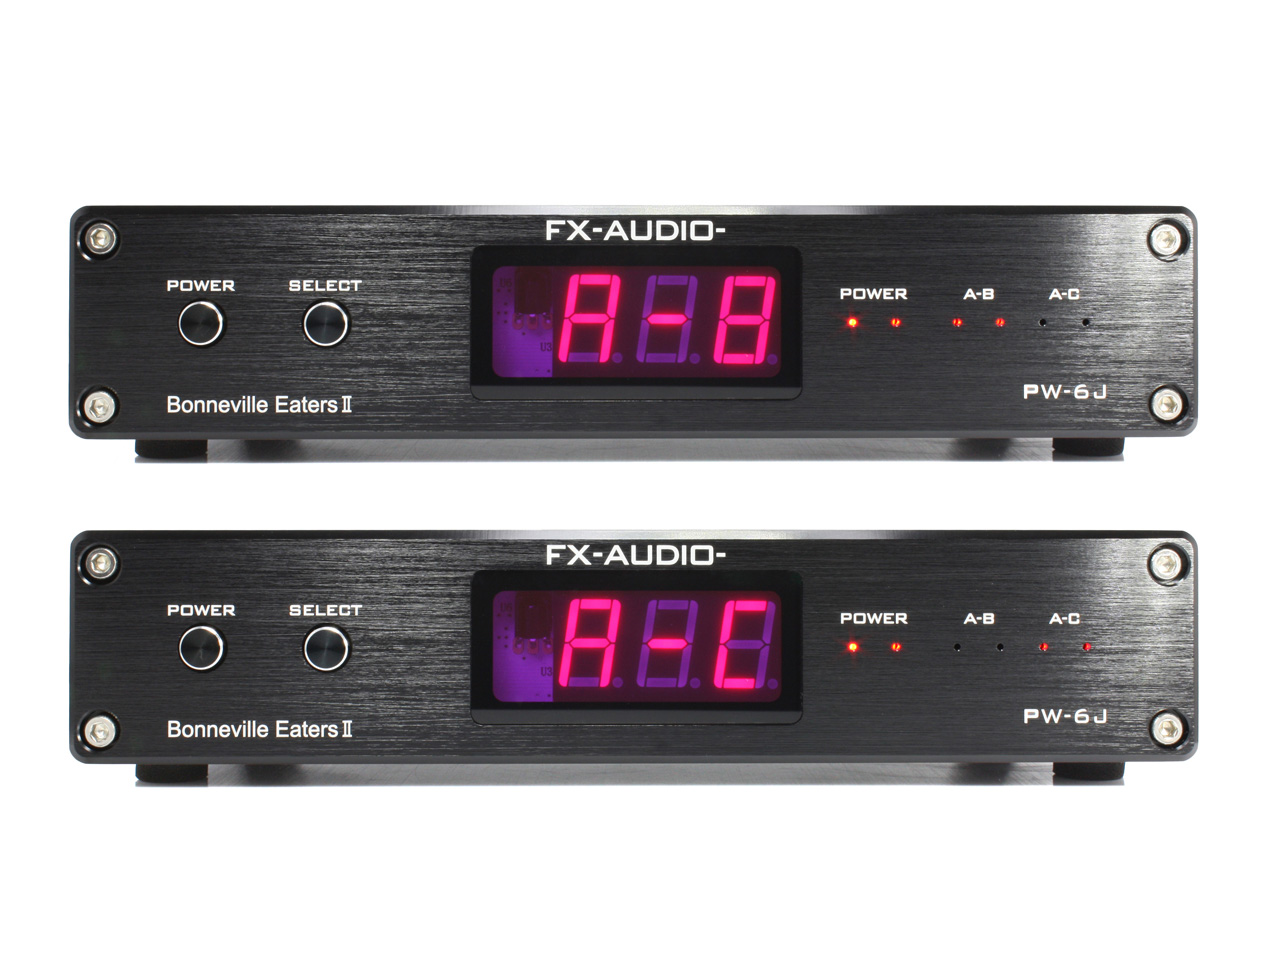 リモコン対応のアンプ・スピーカー切替器 FX-AUDIO-『PW-6J』を新発売 